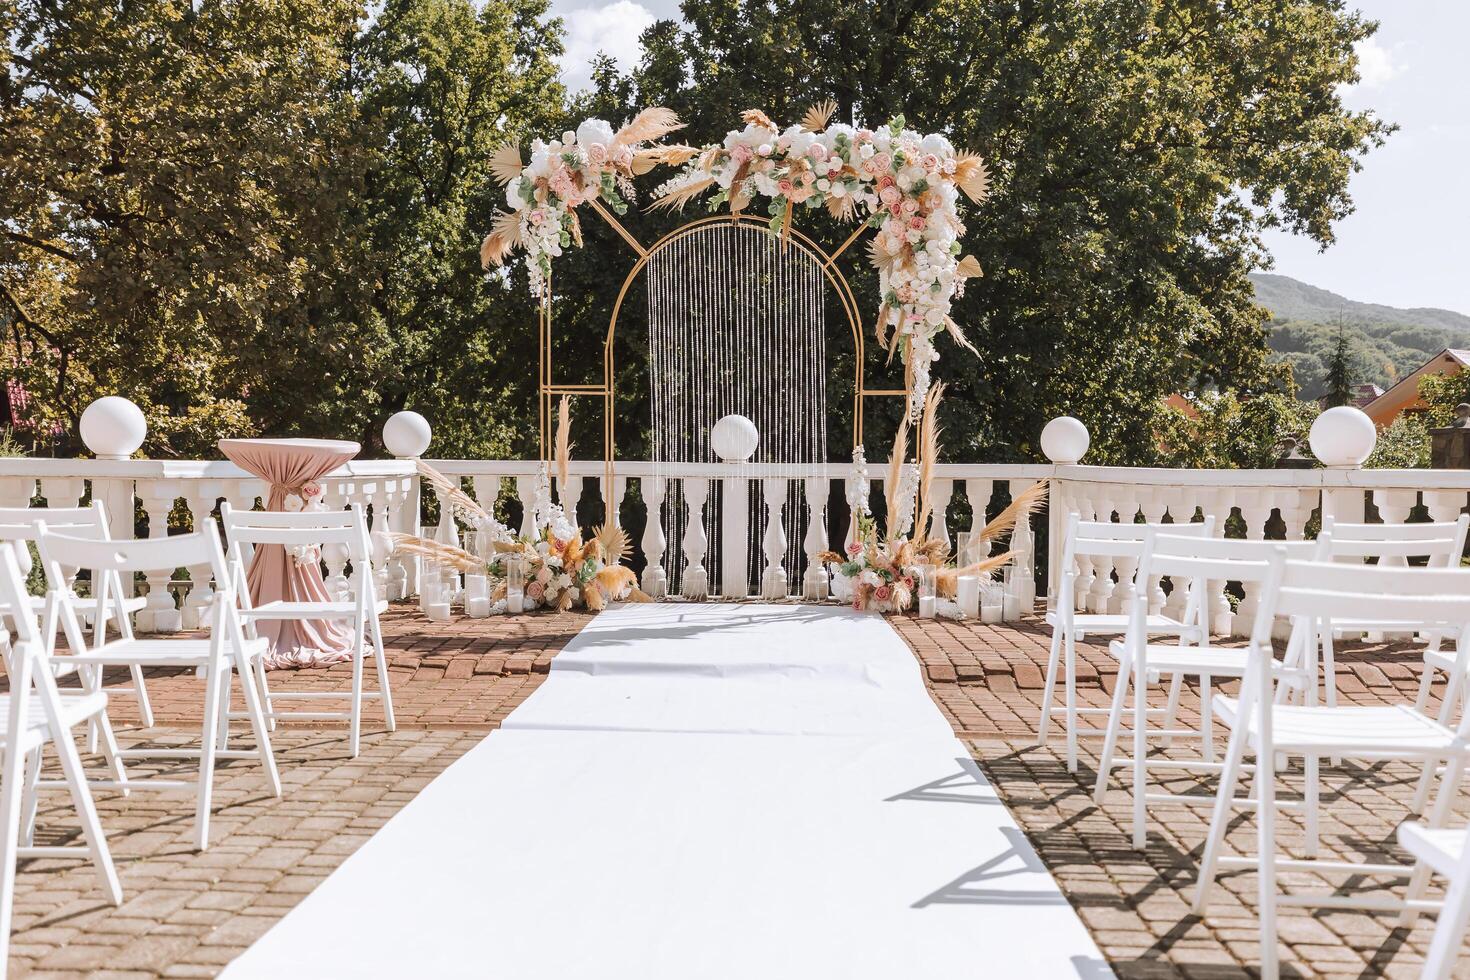 d'or cambre décoré avec fleurs sur le Contexte de des arbres. une blanc chemin cette pistes à le cambre, beaucoup blanc chaises. préparation pour le mariage la cérémonie photo